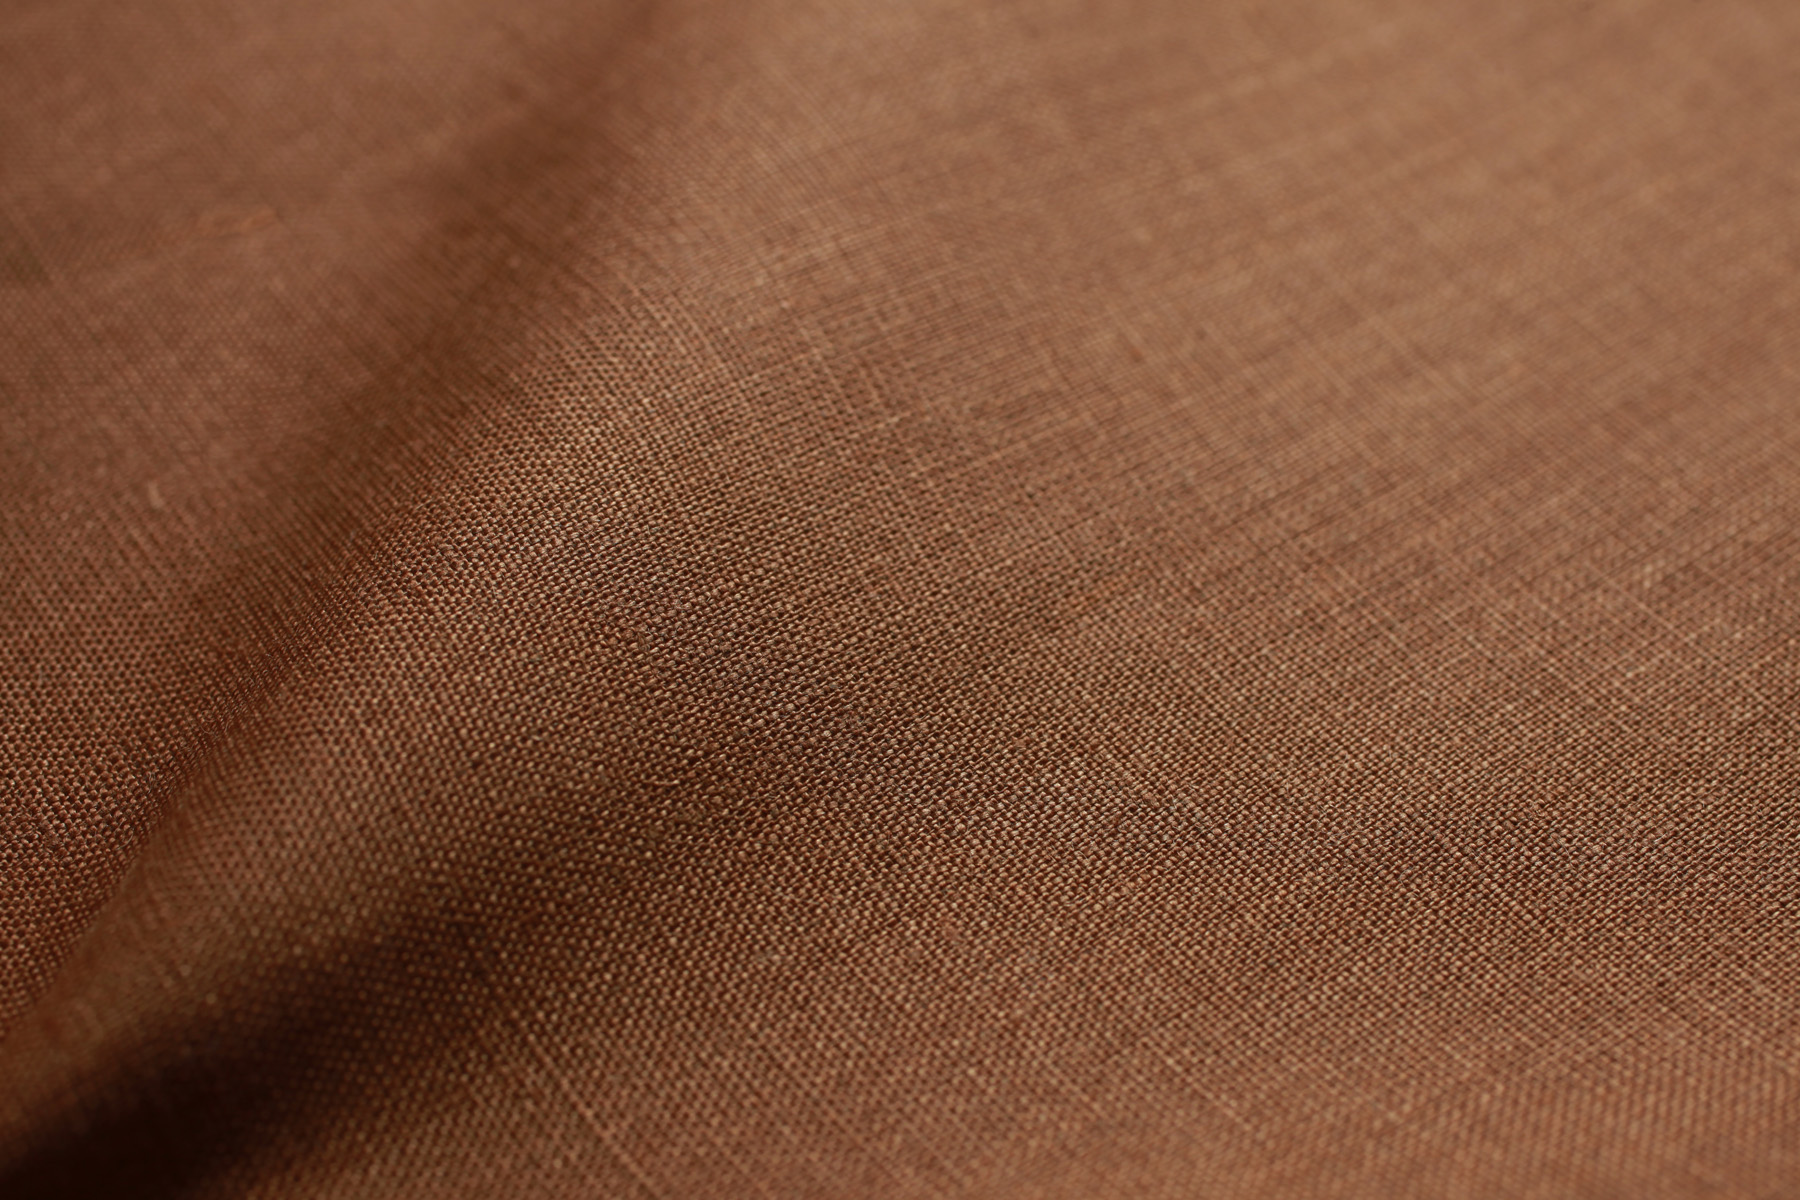 Relaxed Irish Linen- 100% linen shades, heavy weight textured